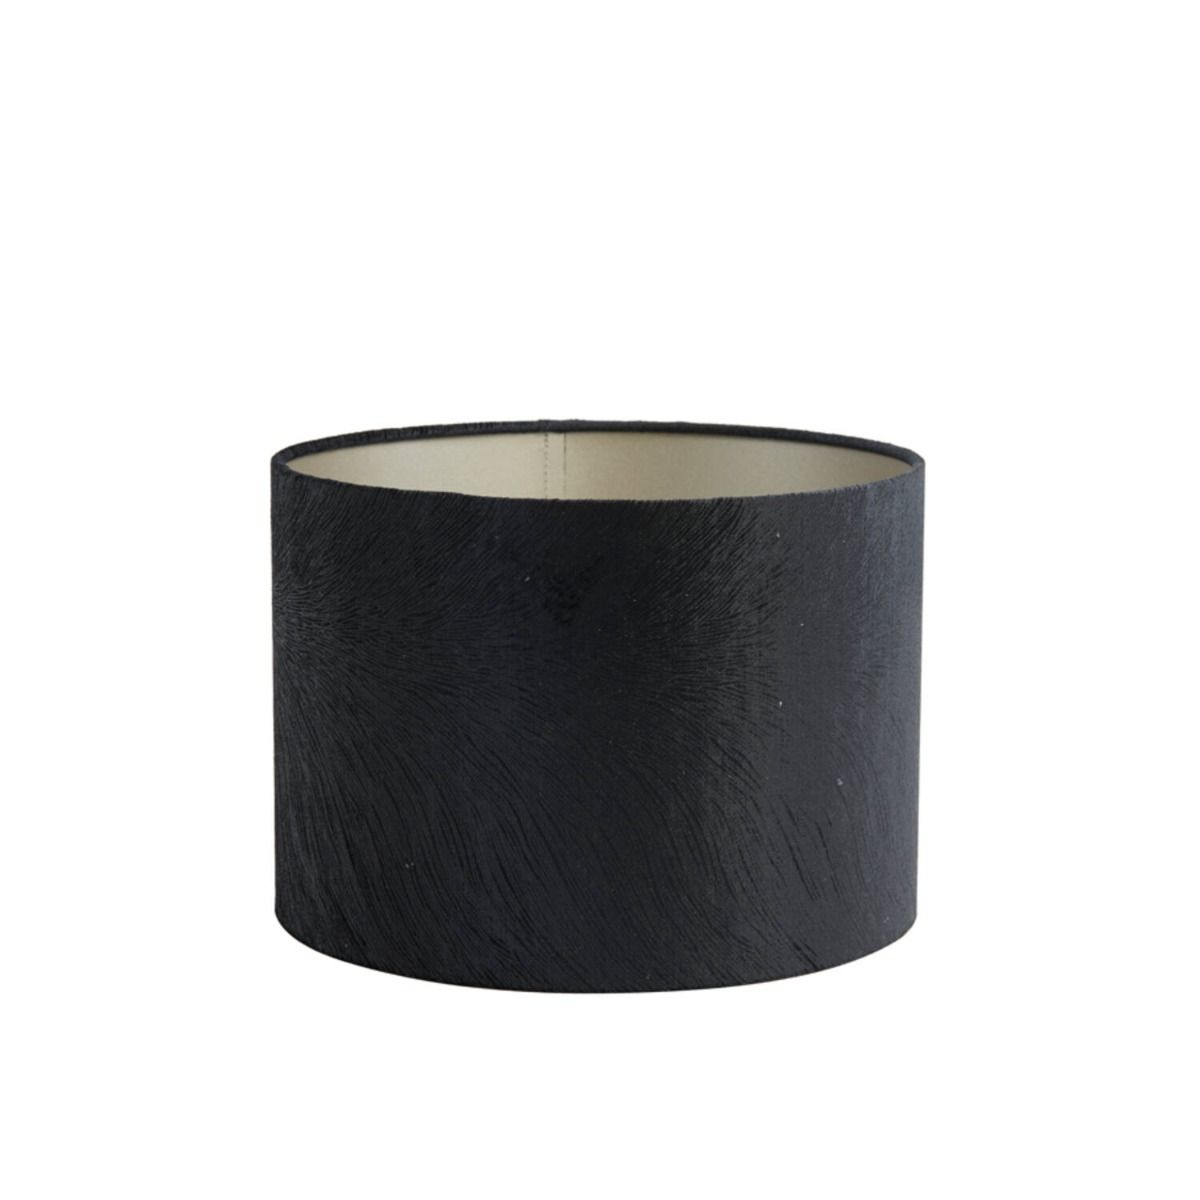 Kap cilinder 25-25-18 cm lubis zwart